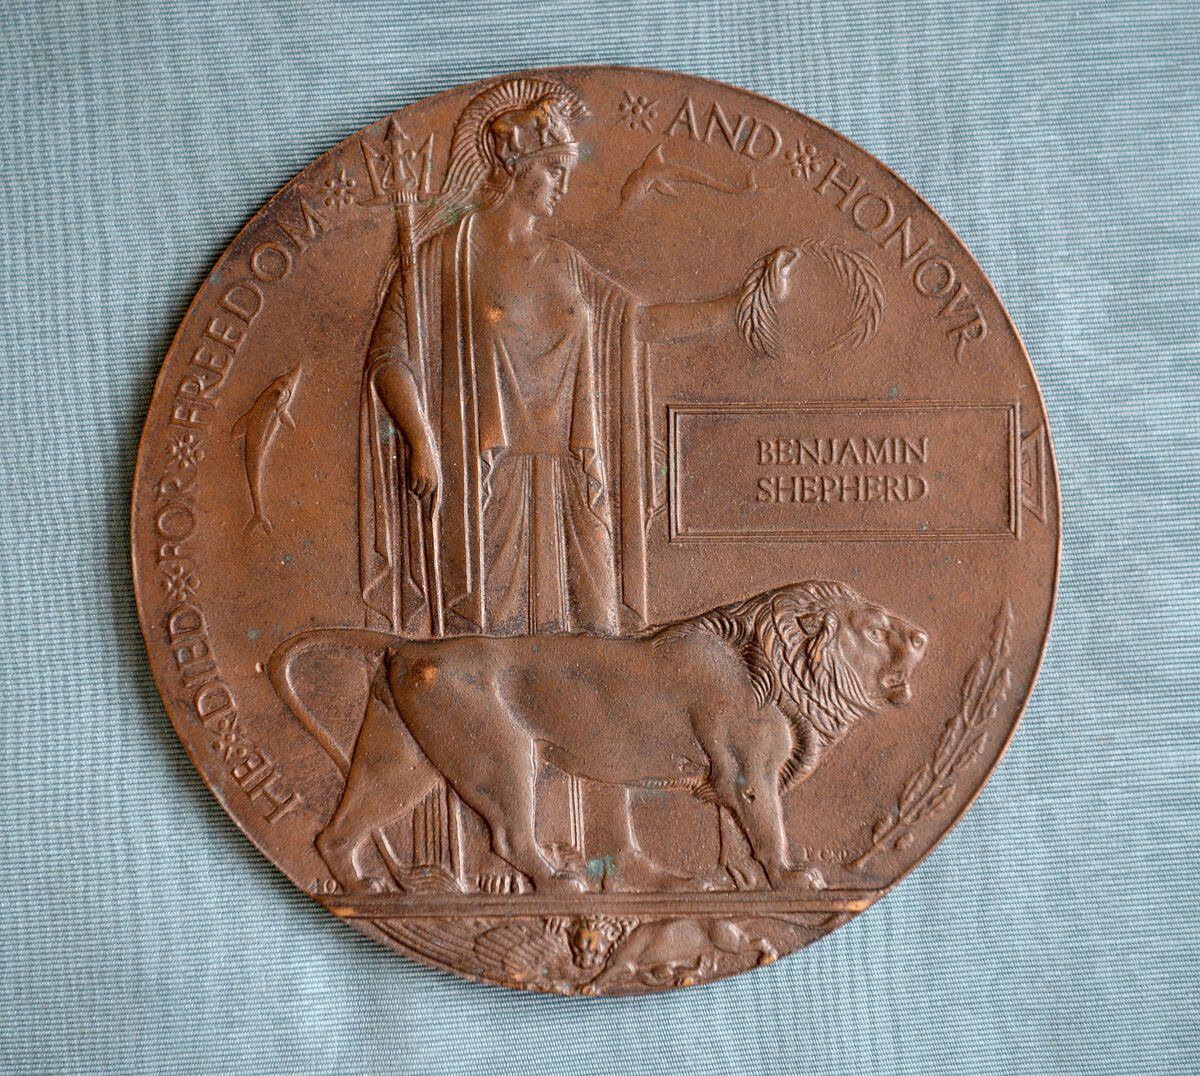 Benjamin Shepherd's memorial plaque